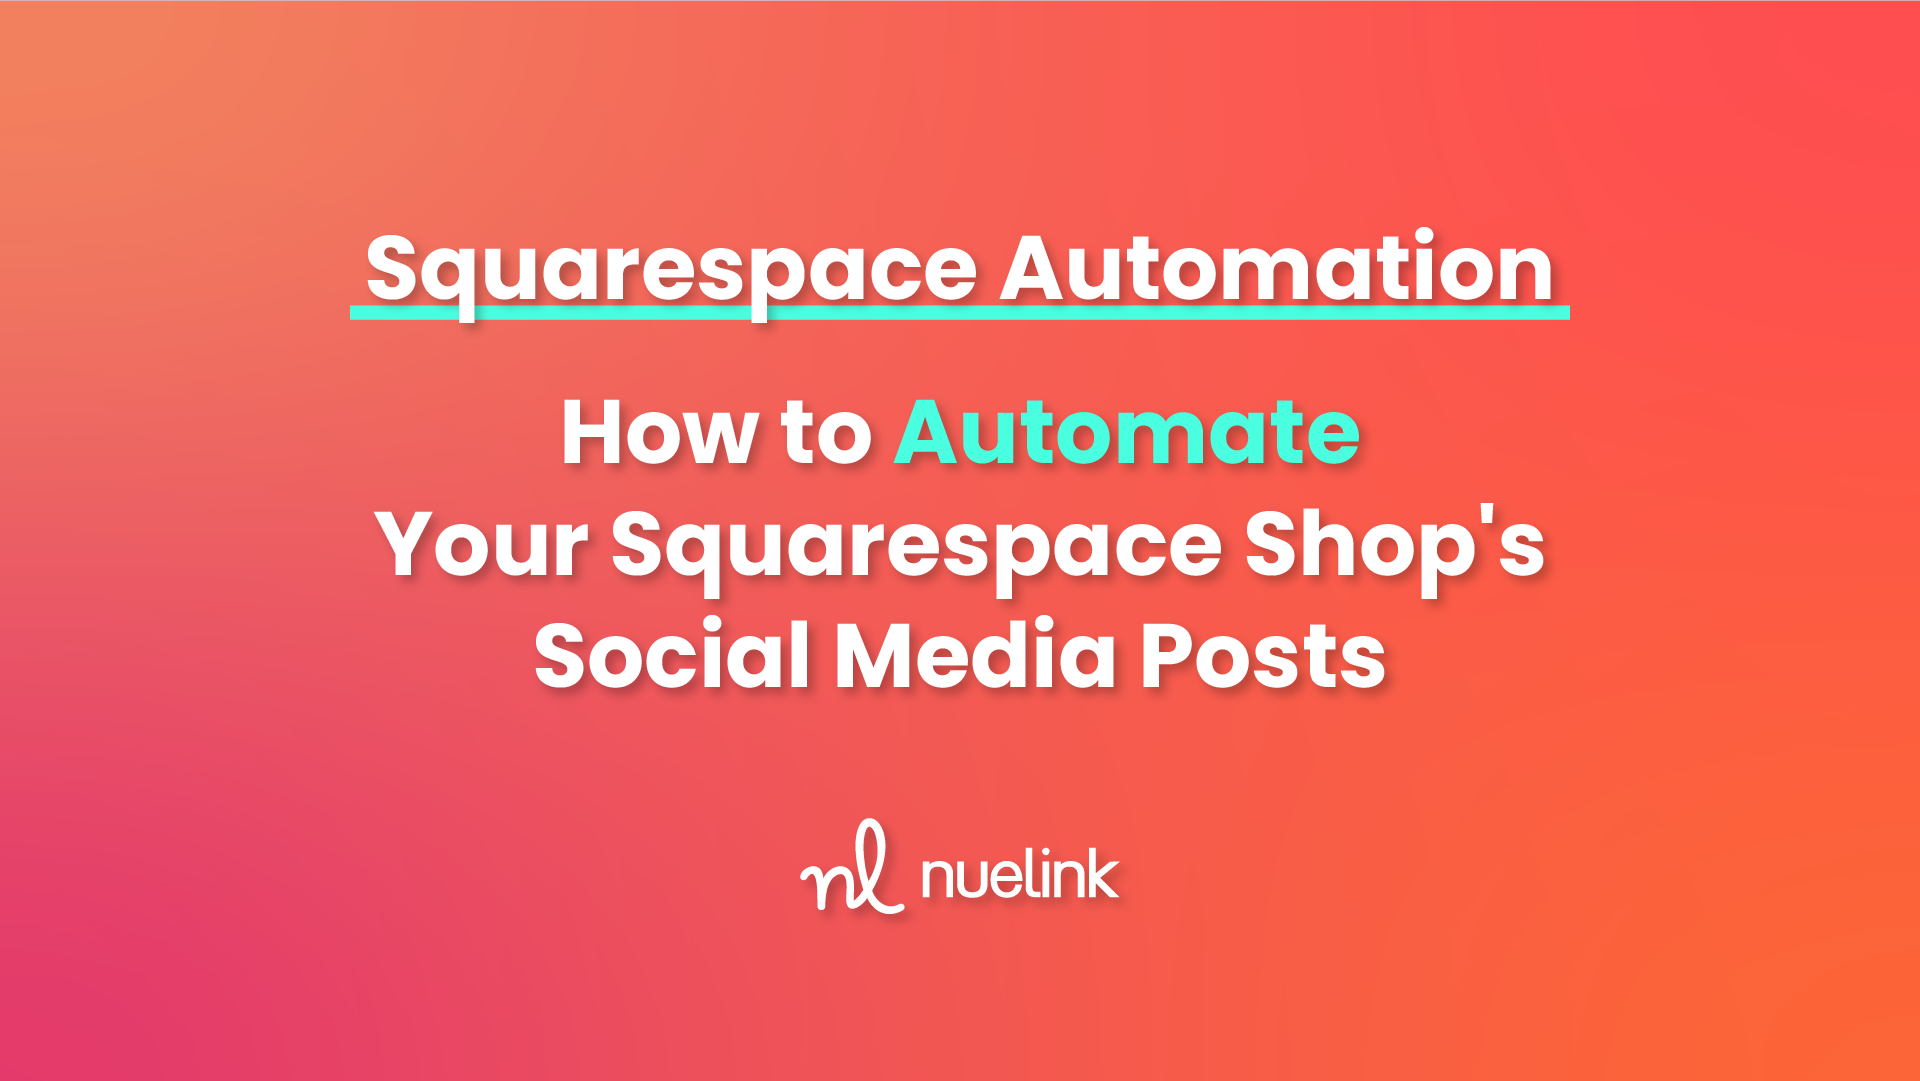 Squarespace Automation